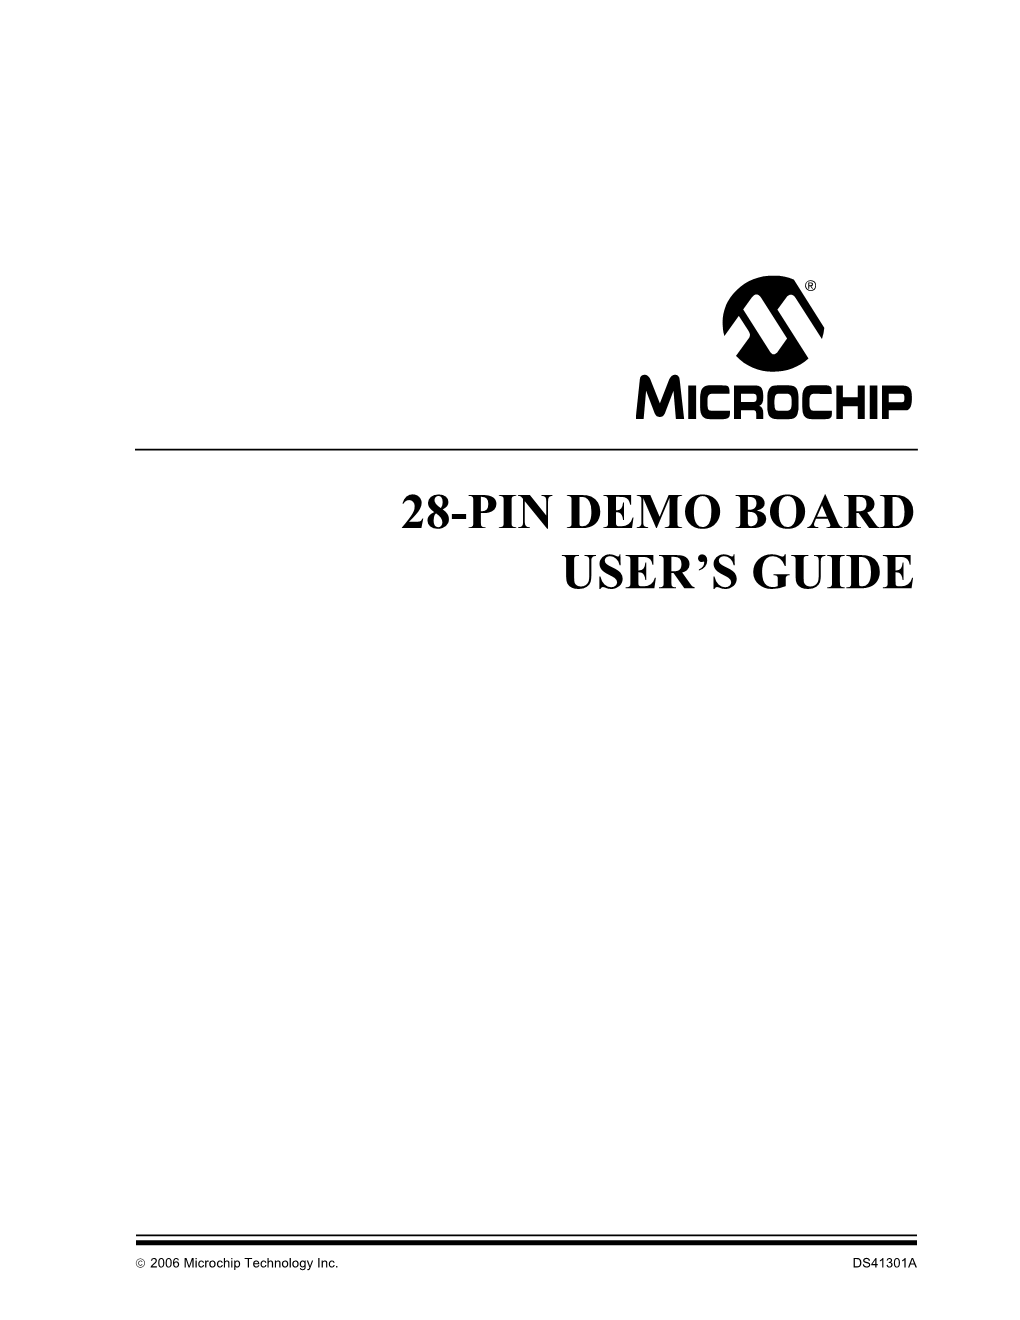 28-Pin Demo Board User's Guide